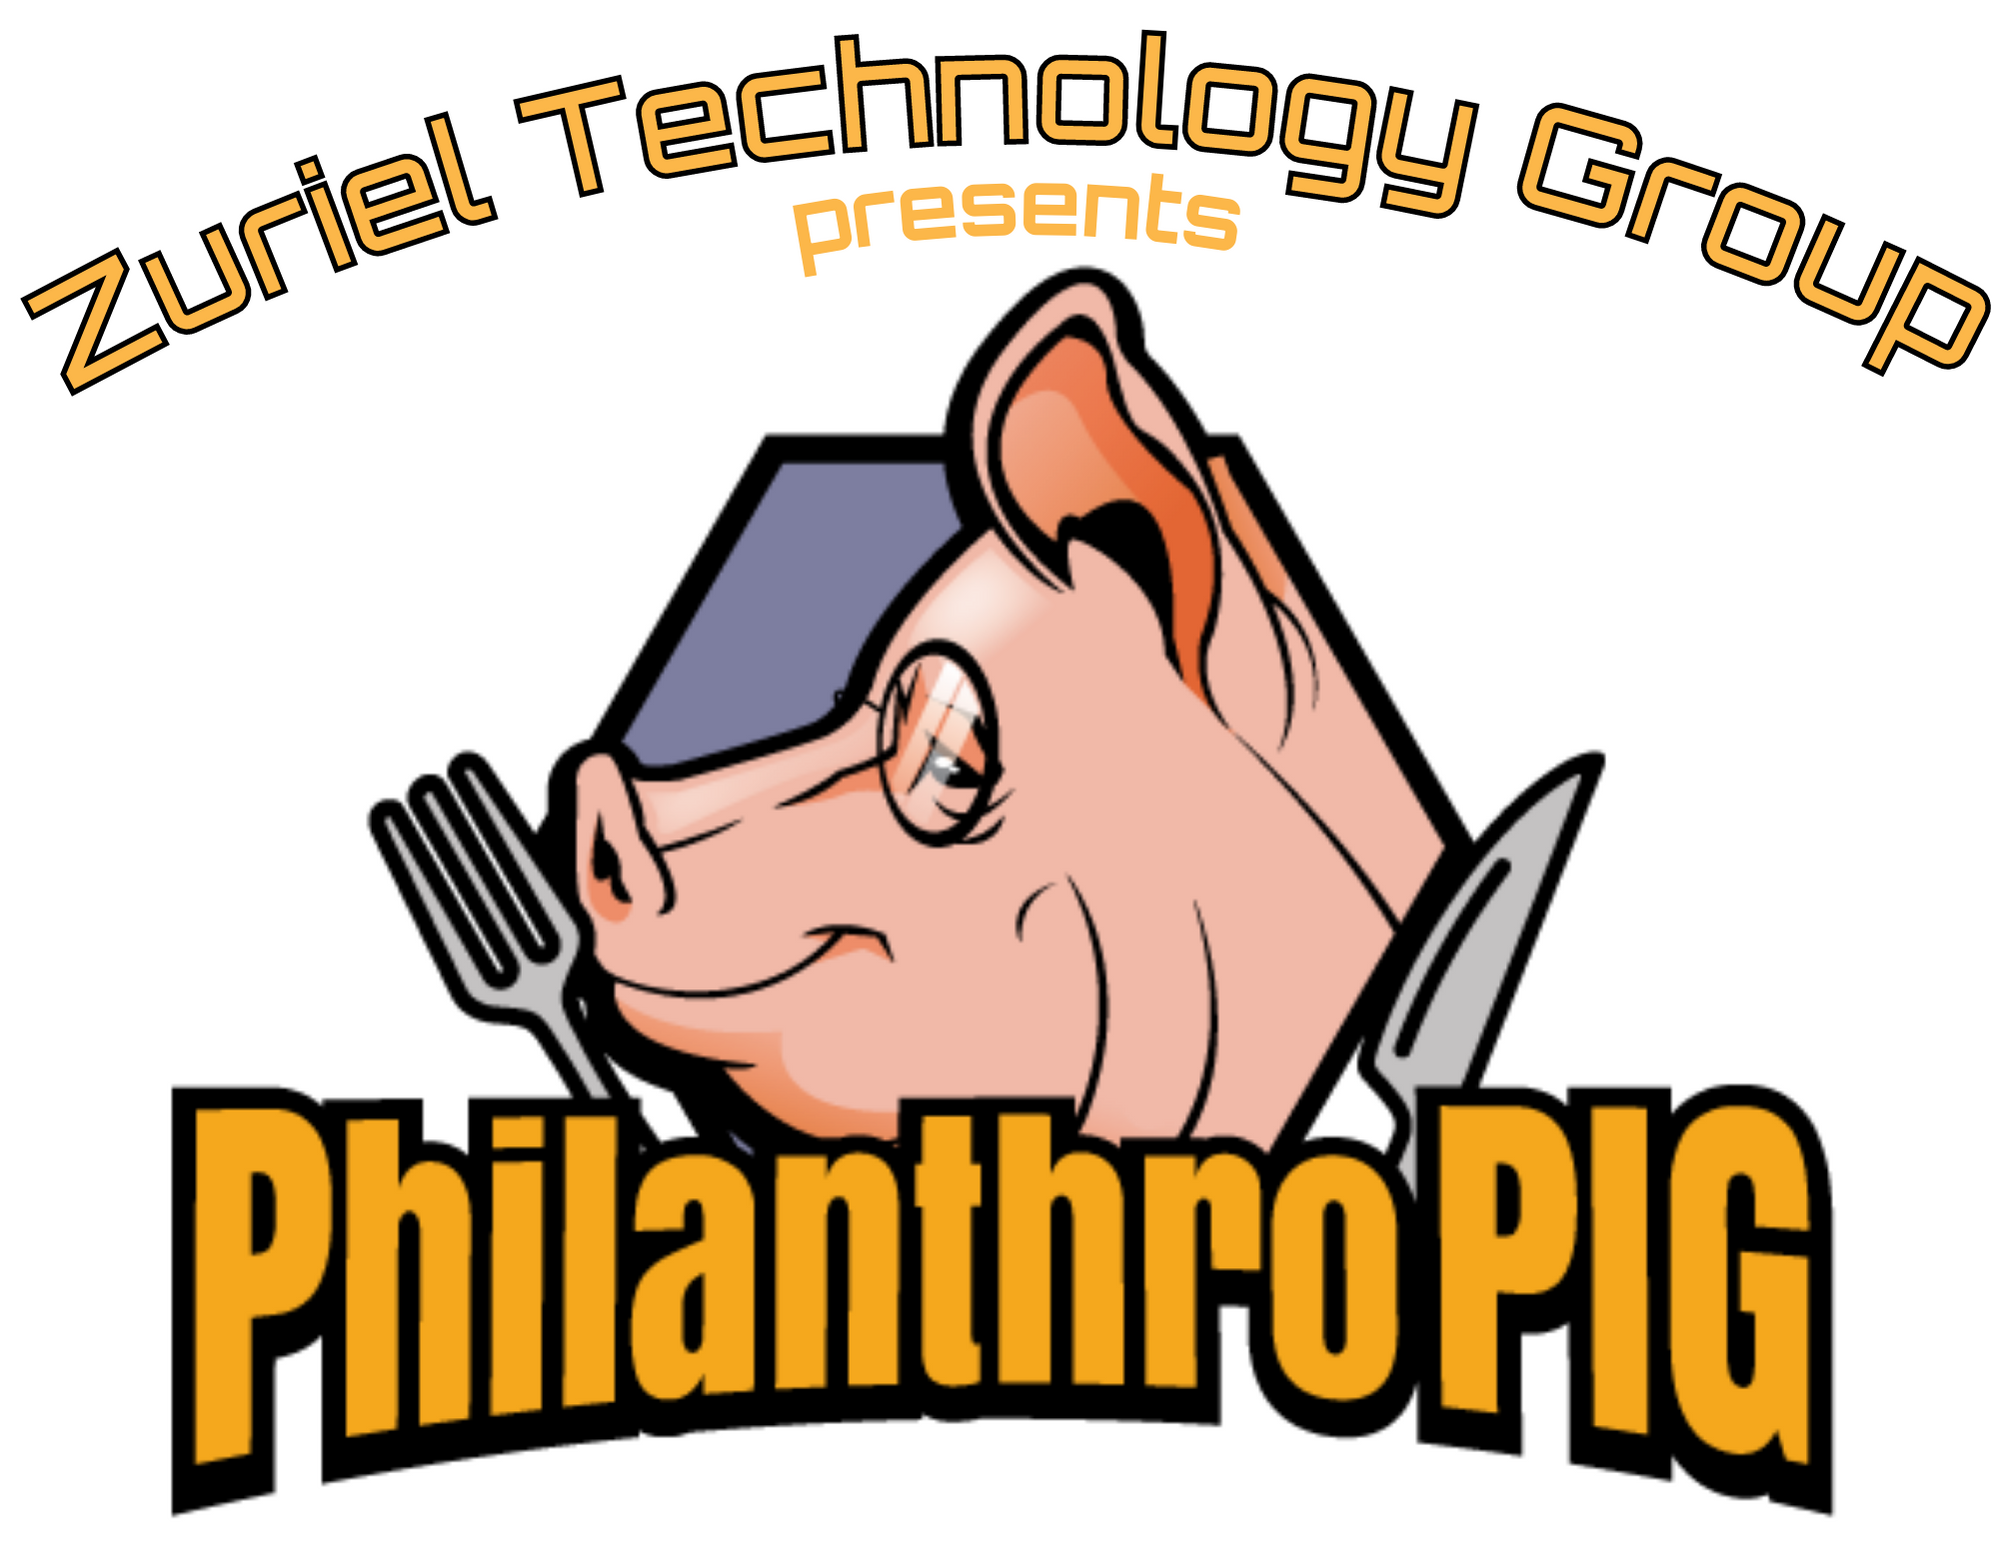 Zuriel Technology Group presents PhilanthroPIG